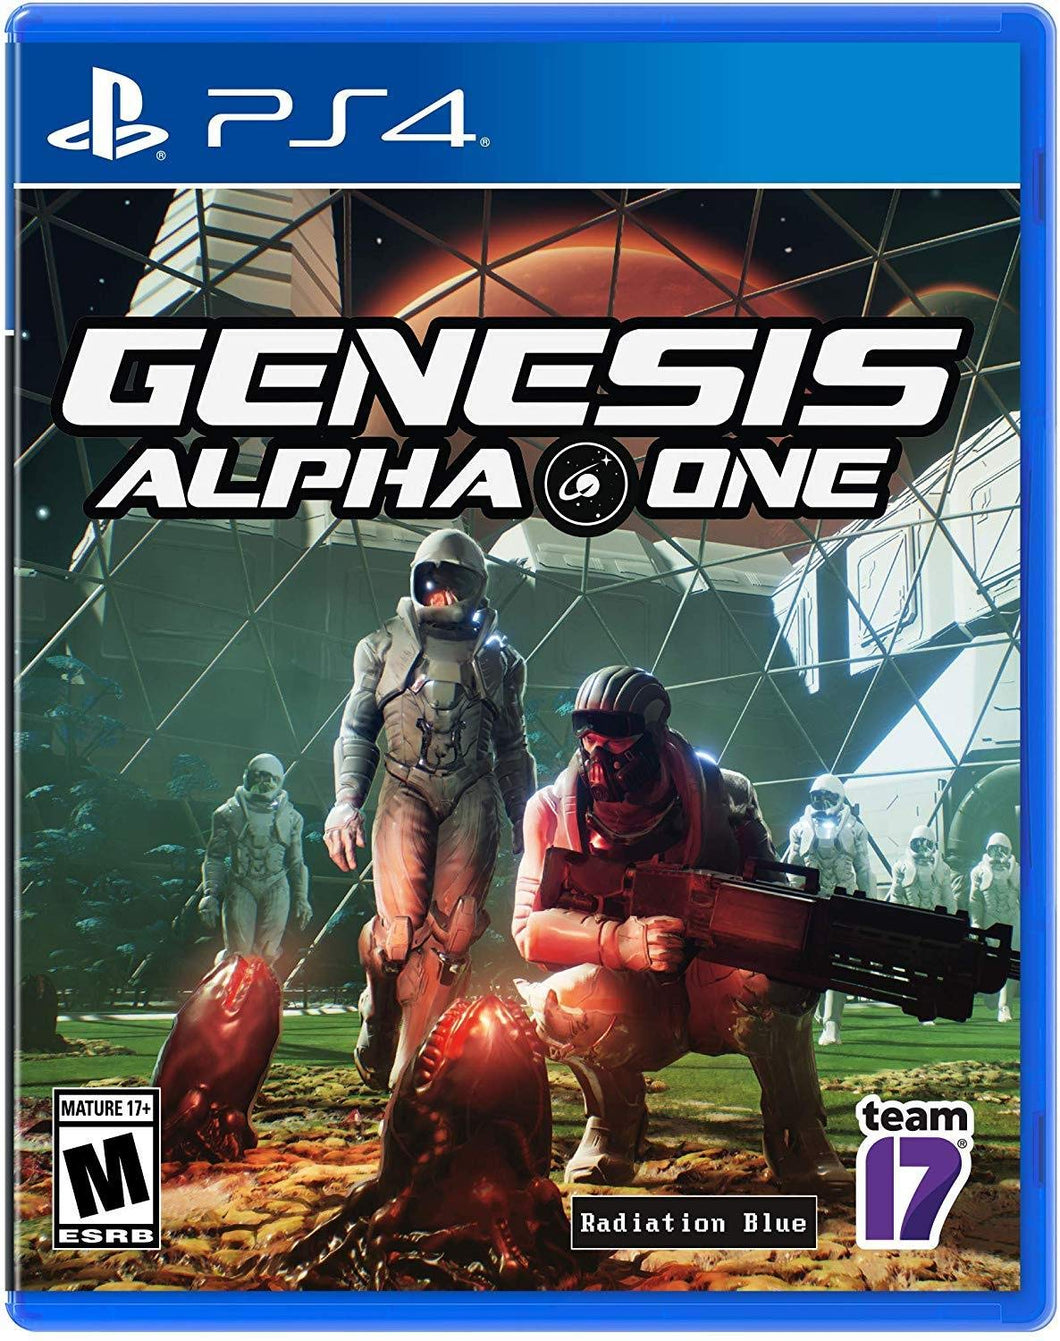 Genesis Alpha One - PlayStation 4